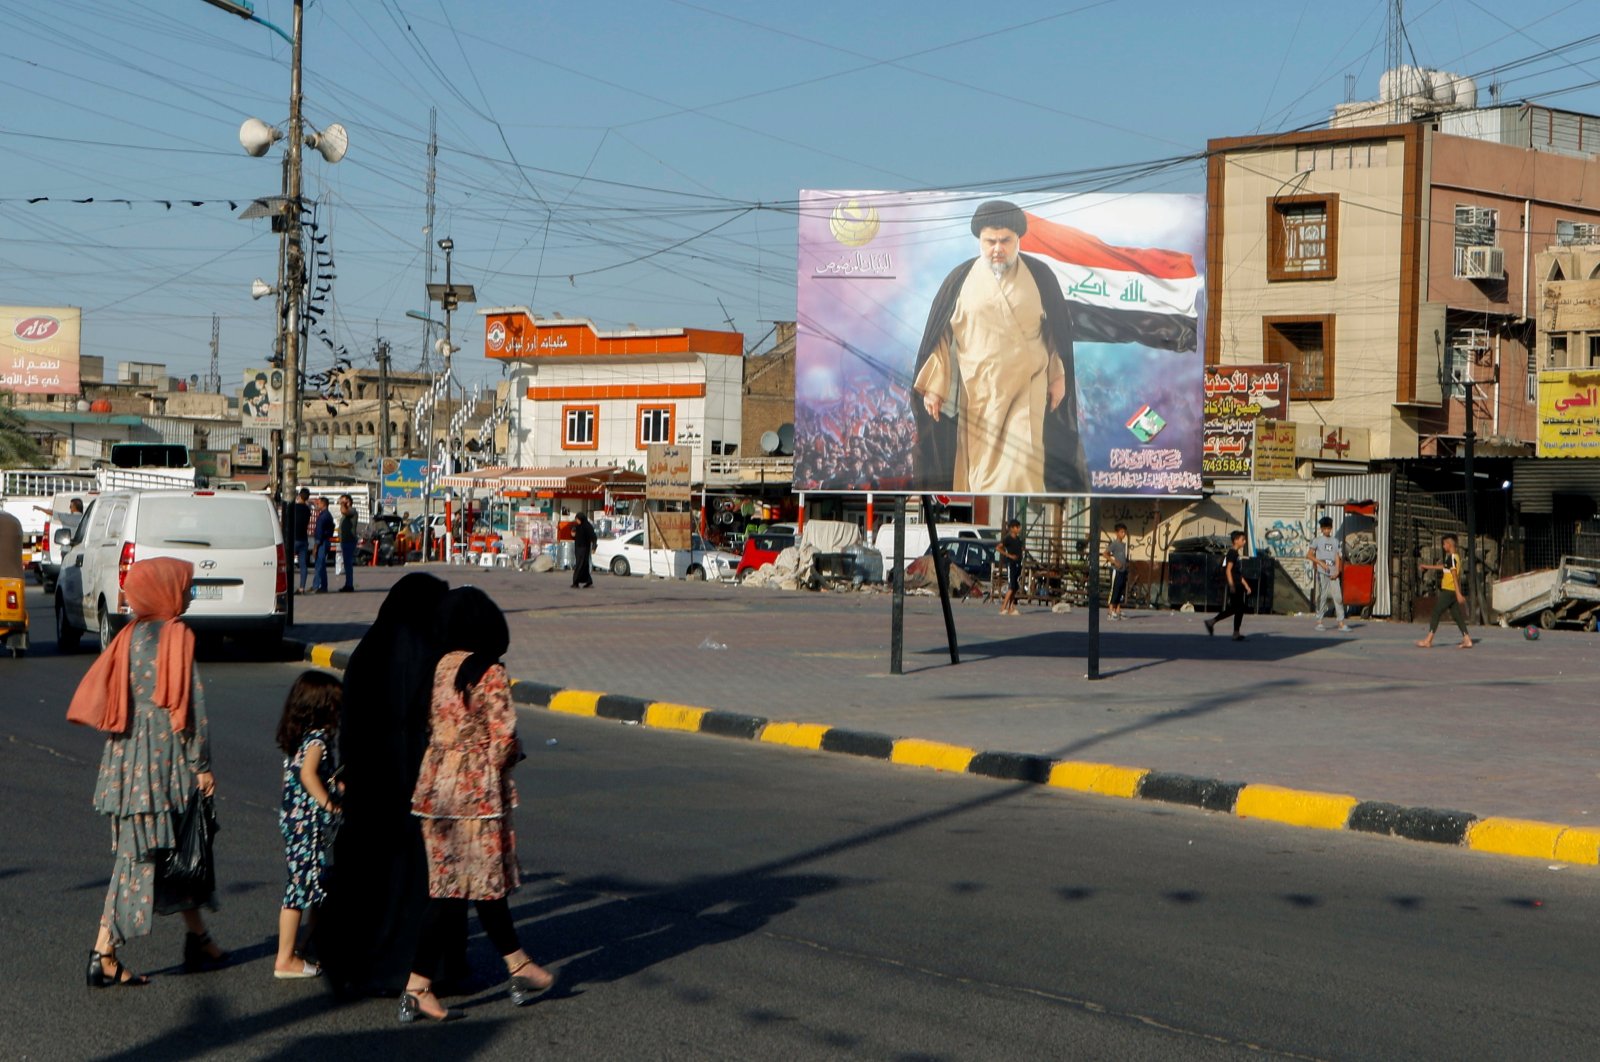 Iraqi women cross a street near a poster of Iraqi Shiite cleric Muqtada al-Sadr in the Sadr City district of Baghdad, Iraq, June 21, 2021. (Reuters File Photo)